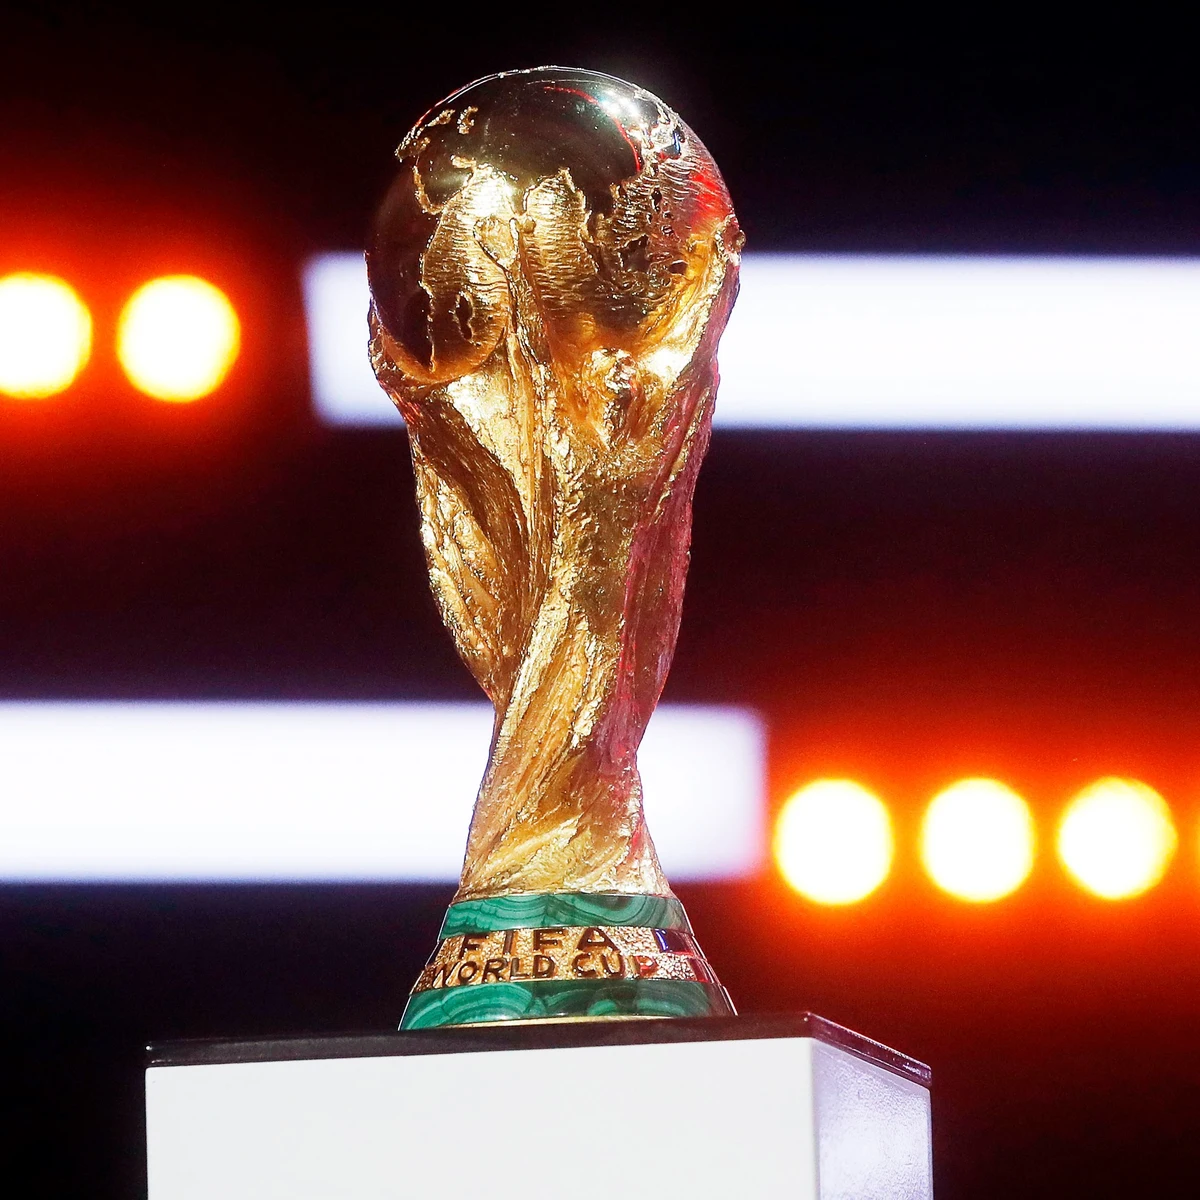 Así es la Copa Mundial de Fútbol: peso, materiales, diseño y